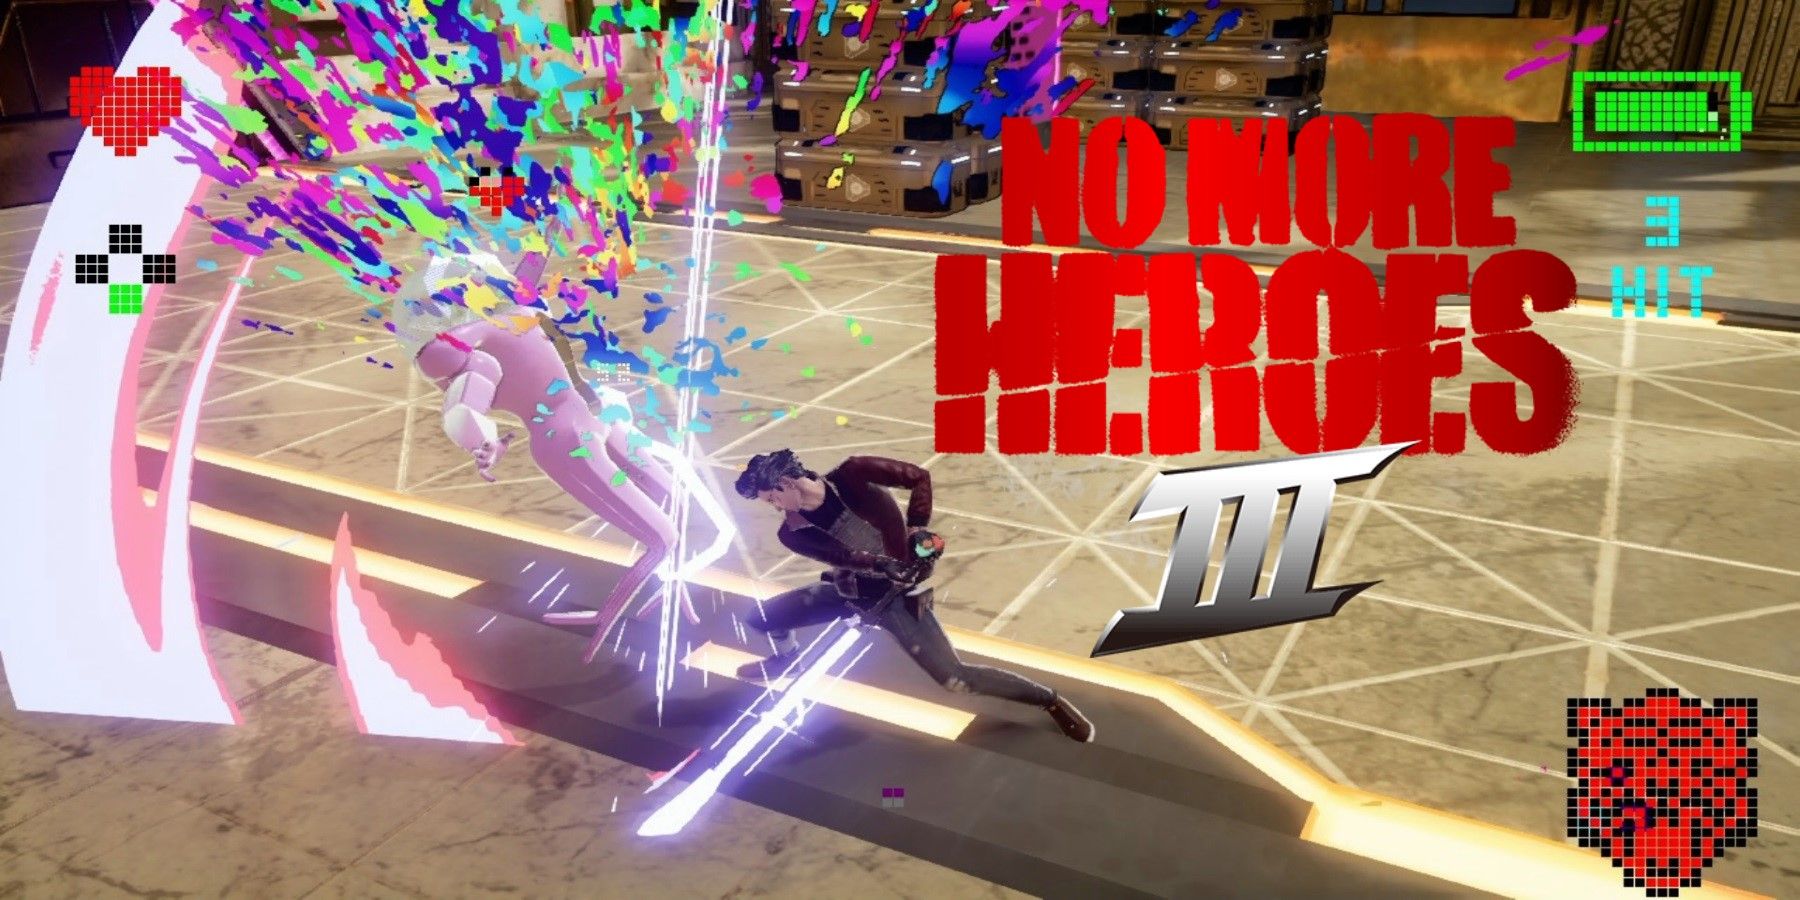 no more heroes 3 concept art